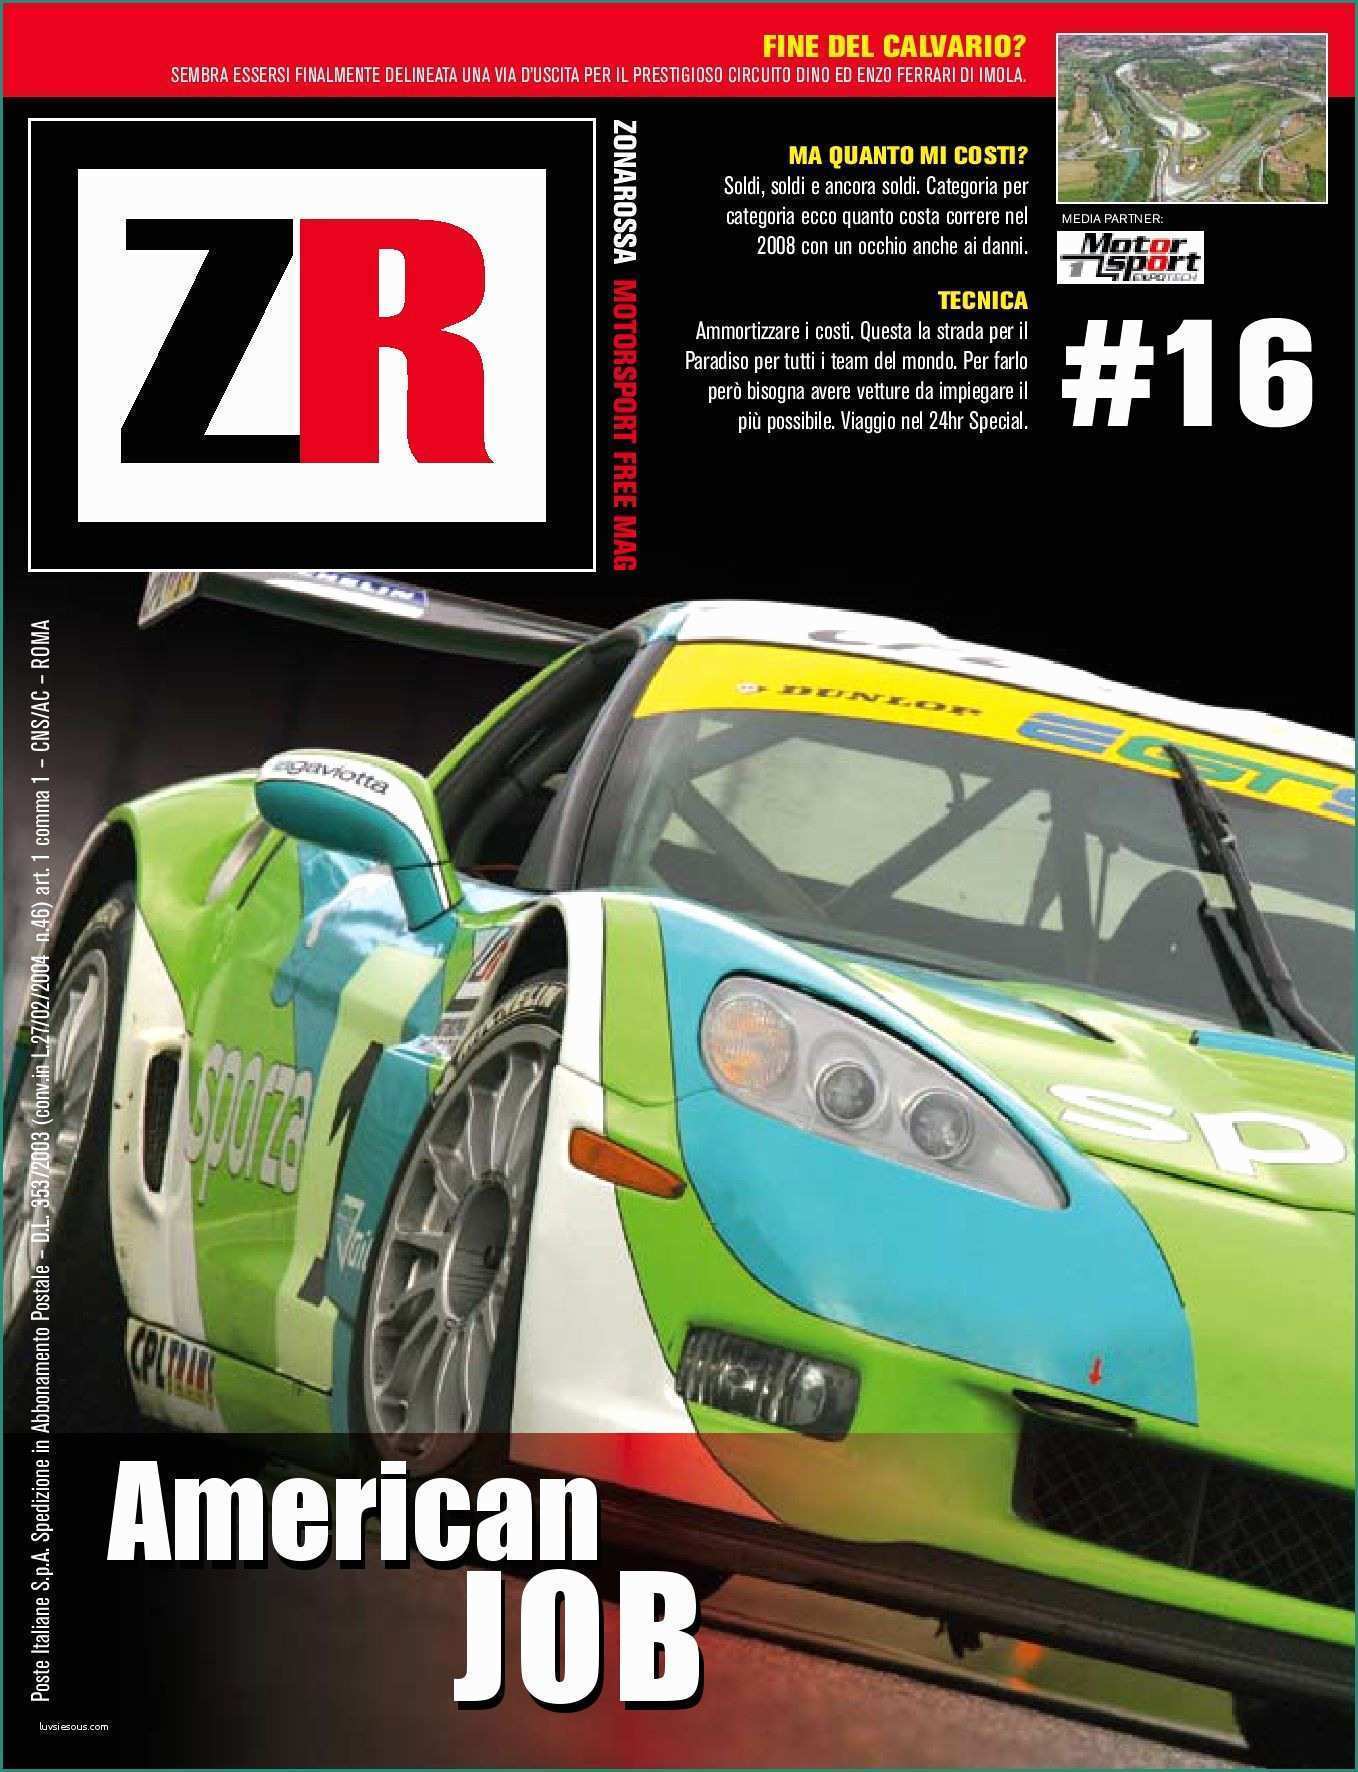 De Angelis Mobili E Zr Motorsport Magazine by Zrmagazine issuu